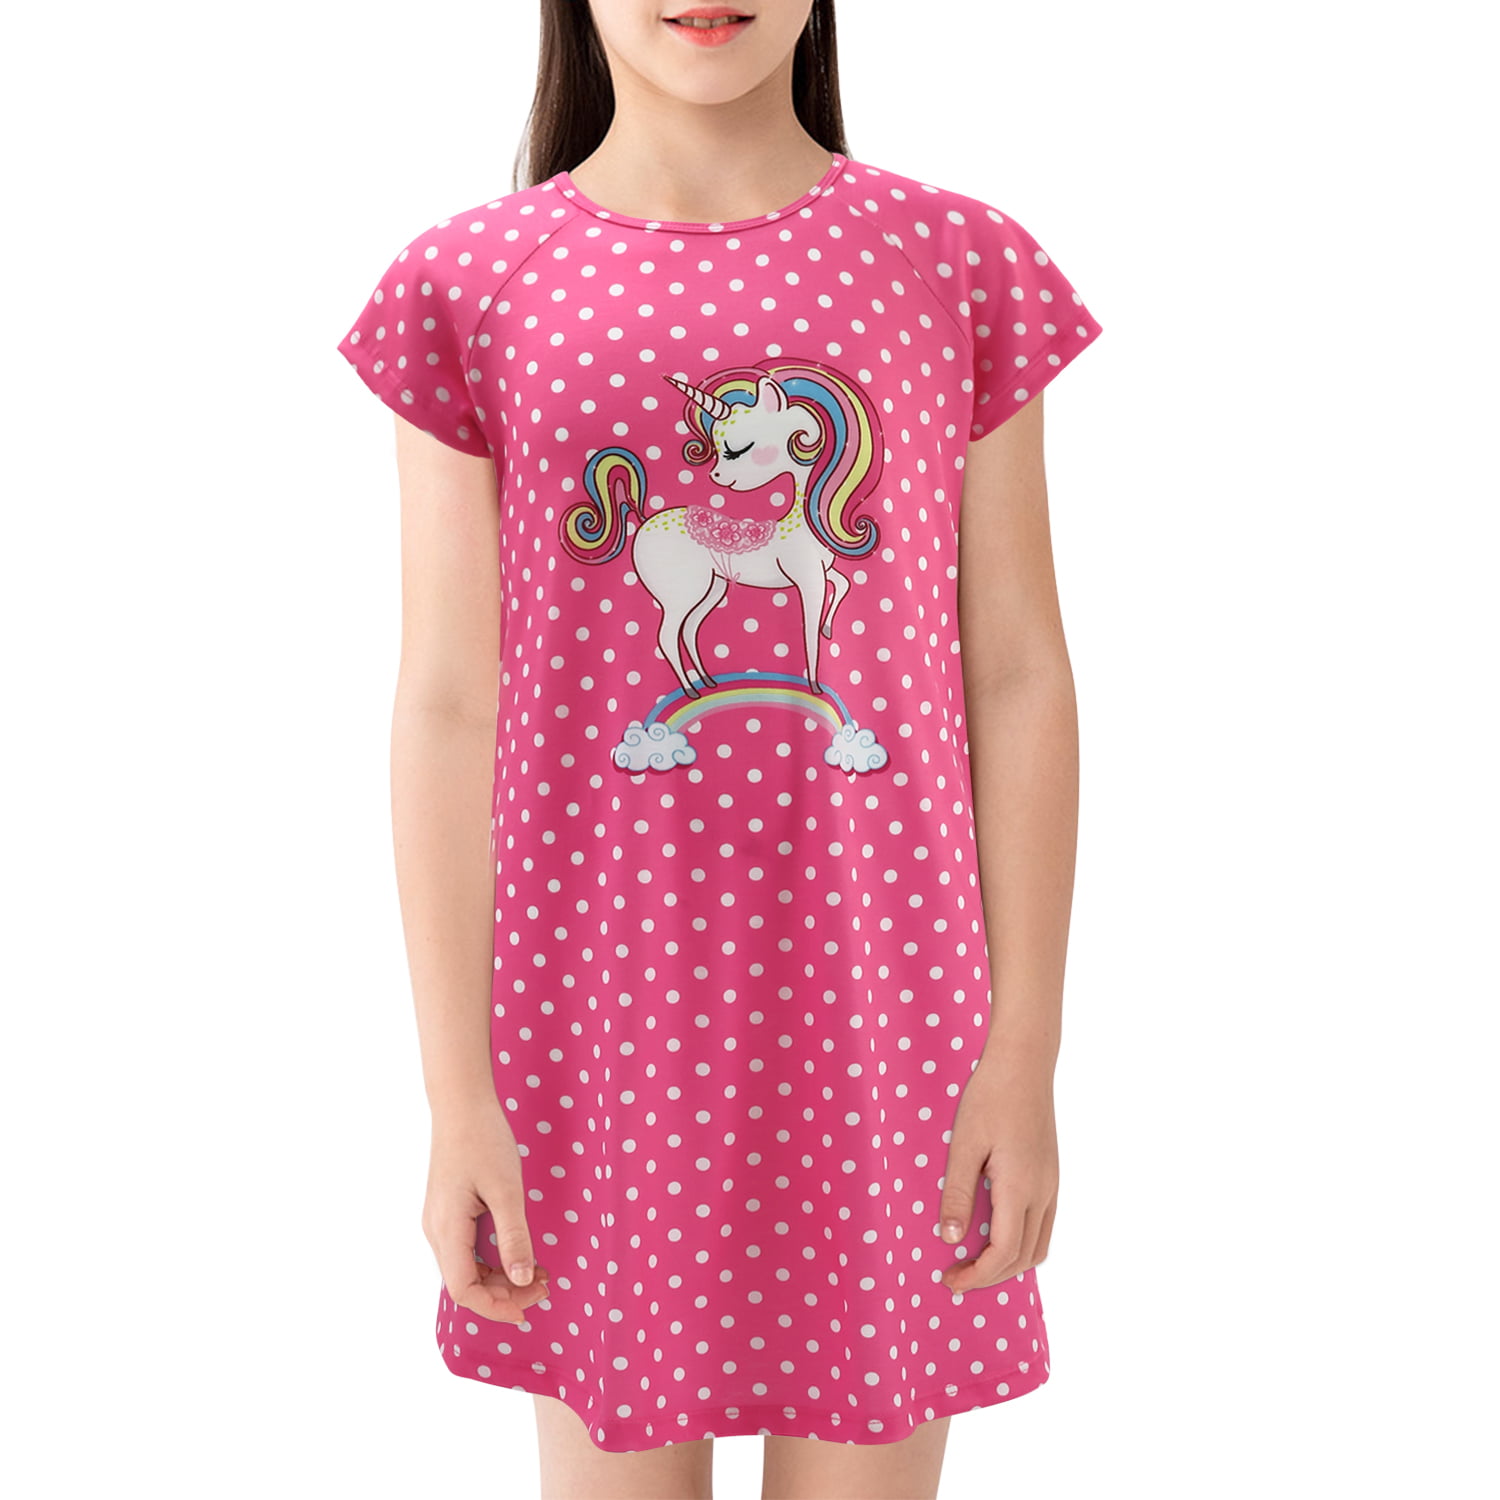 Girls Unicorn Nightgown Pajama Star Rainbow Printed Sleepwear Casual Sleep Shirts Nightie Princess Night Dresses